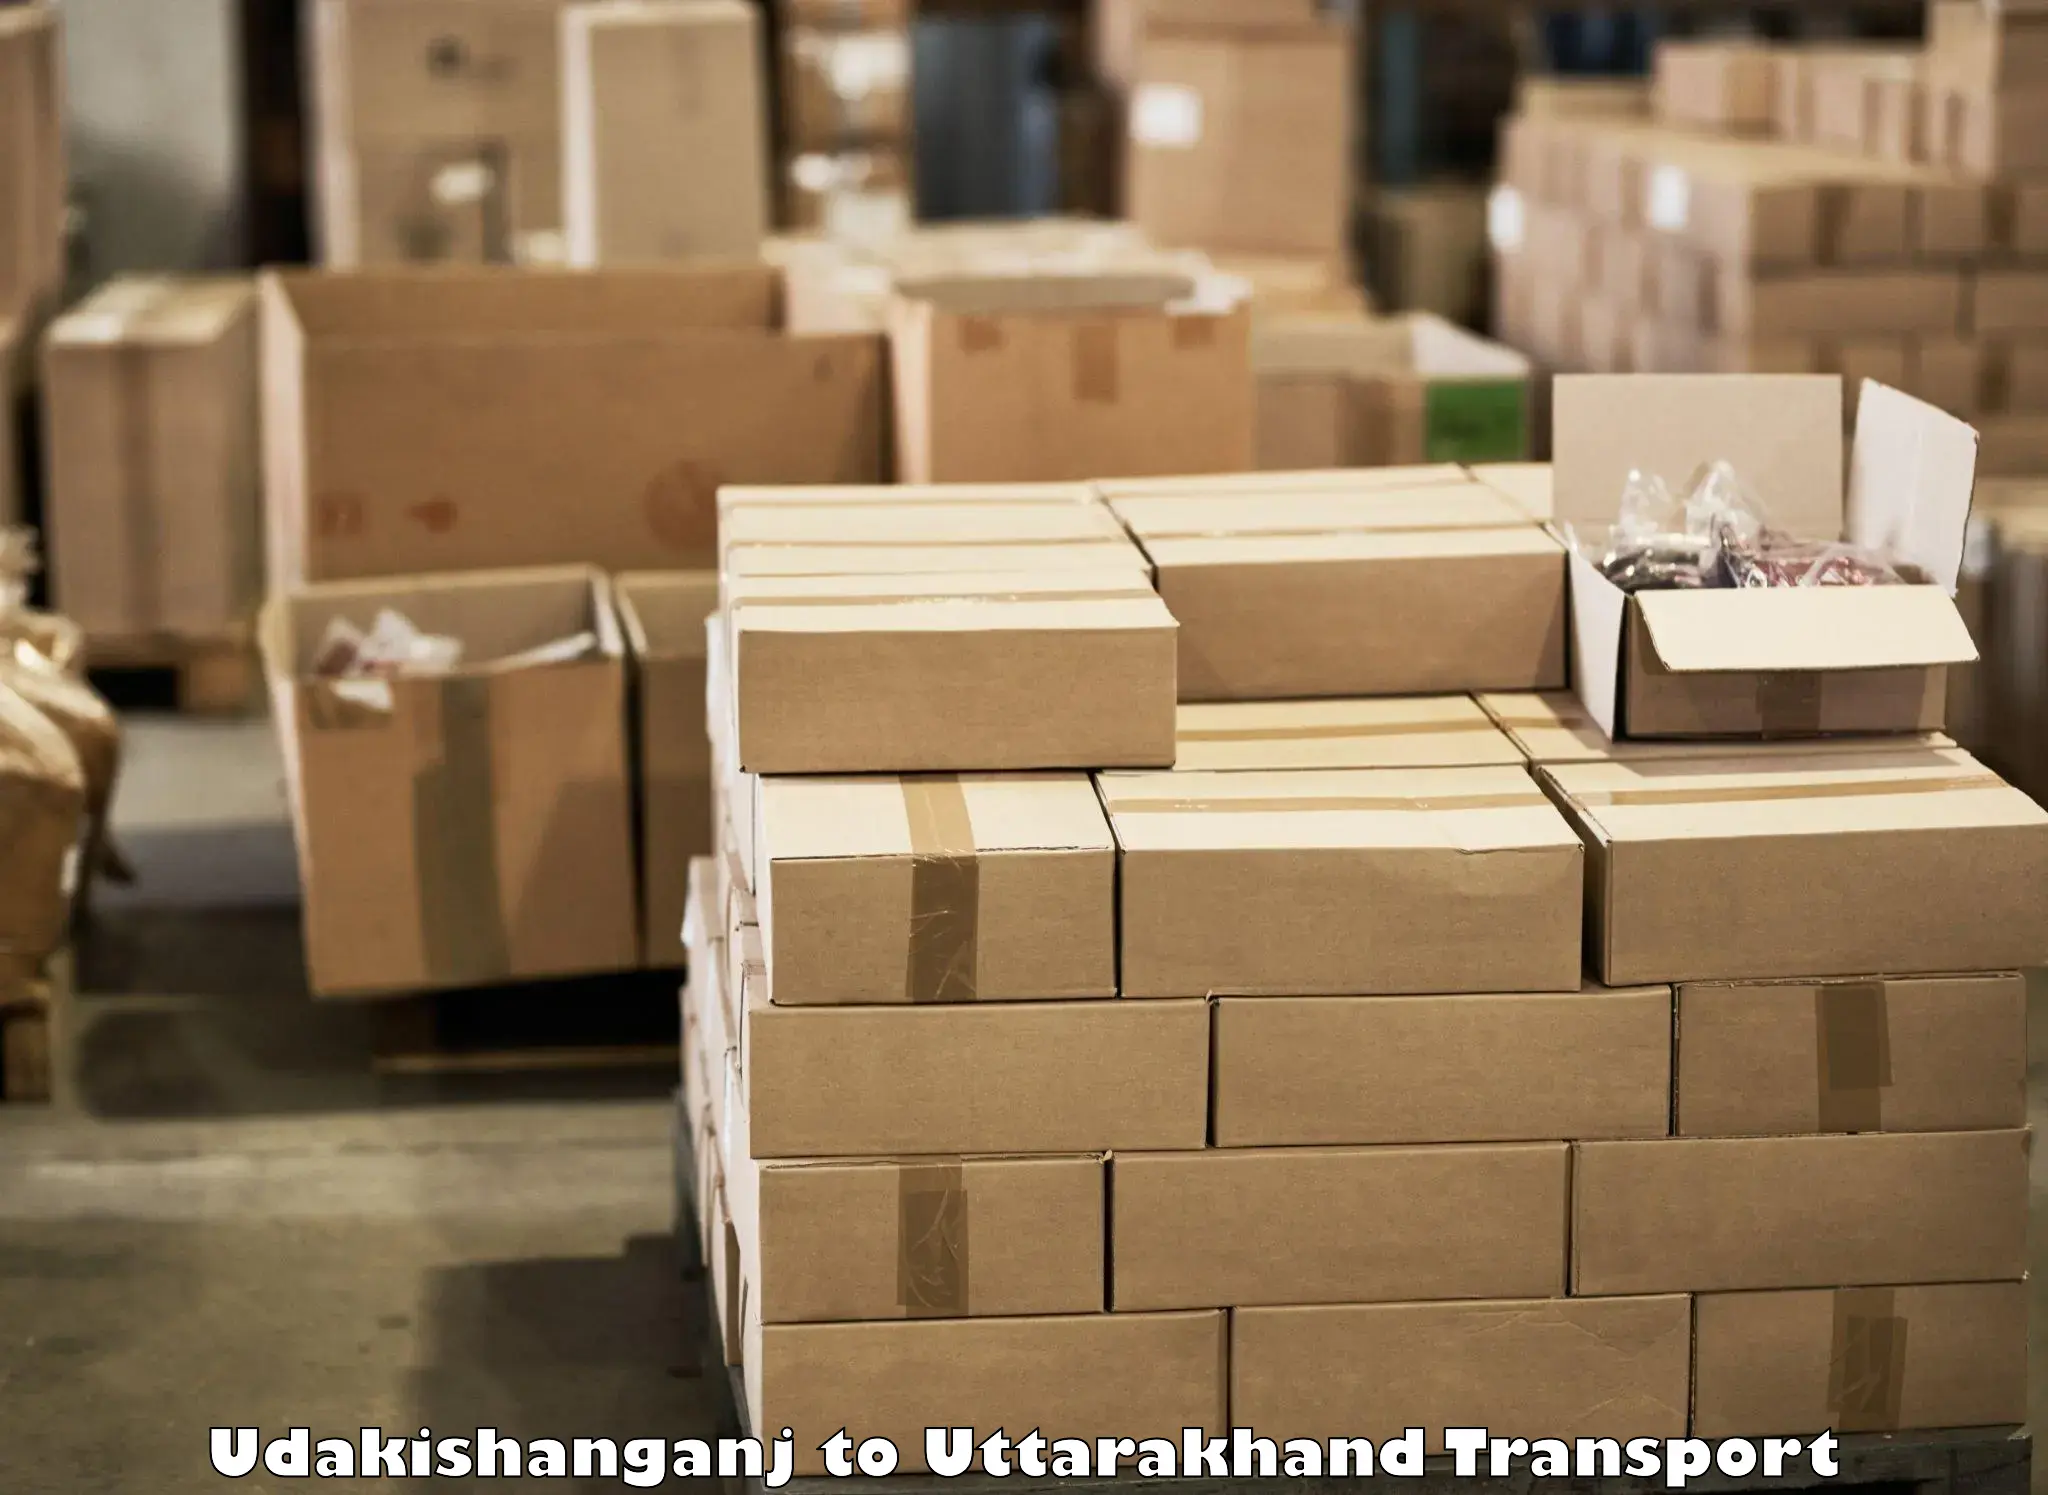 Transportation services Udakishanganj to Uttarakhand